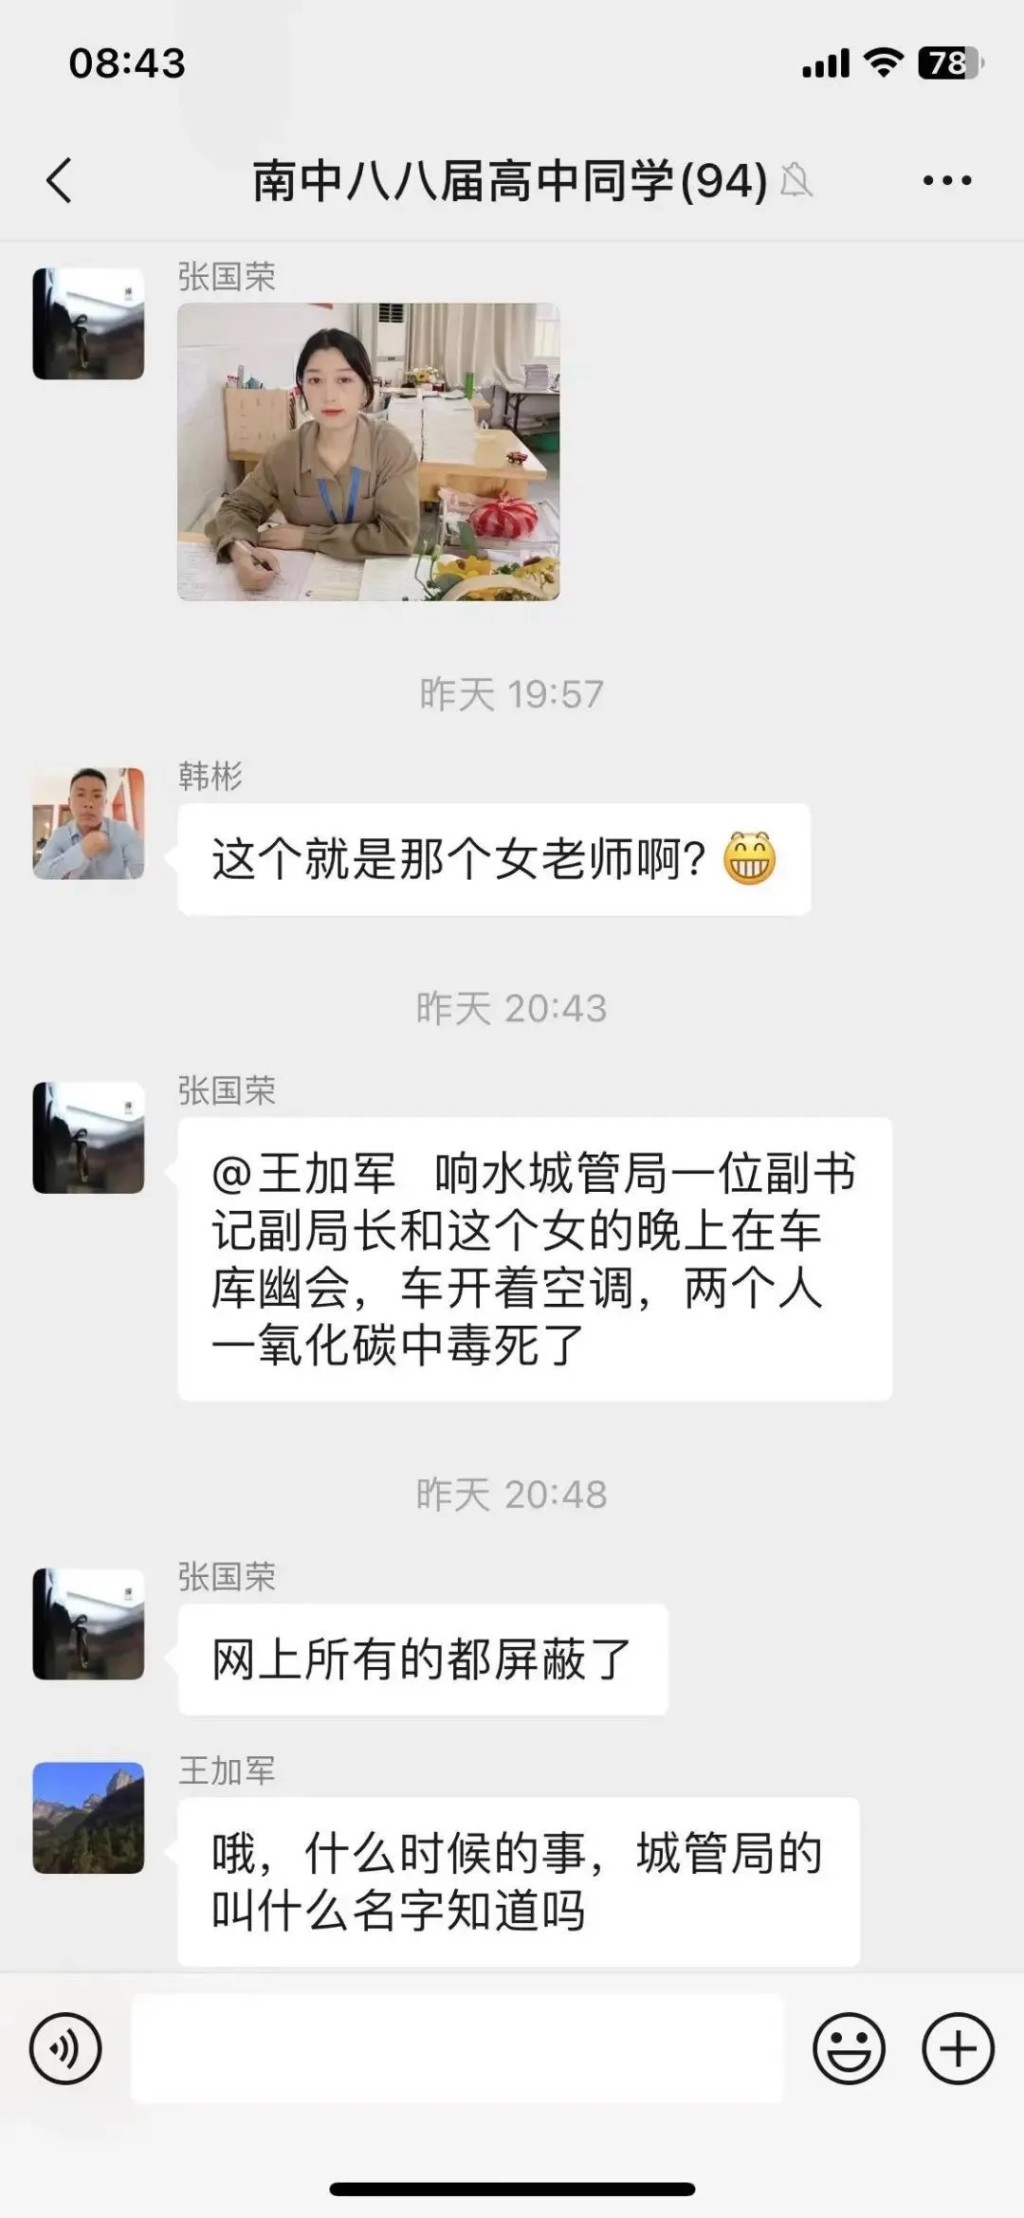 網民一度廣泛討論響水縣城管局副局長蘇陽及小學女教師王海萍懷疑「車震」事件。